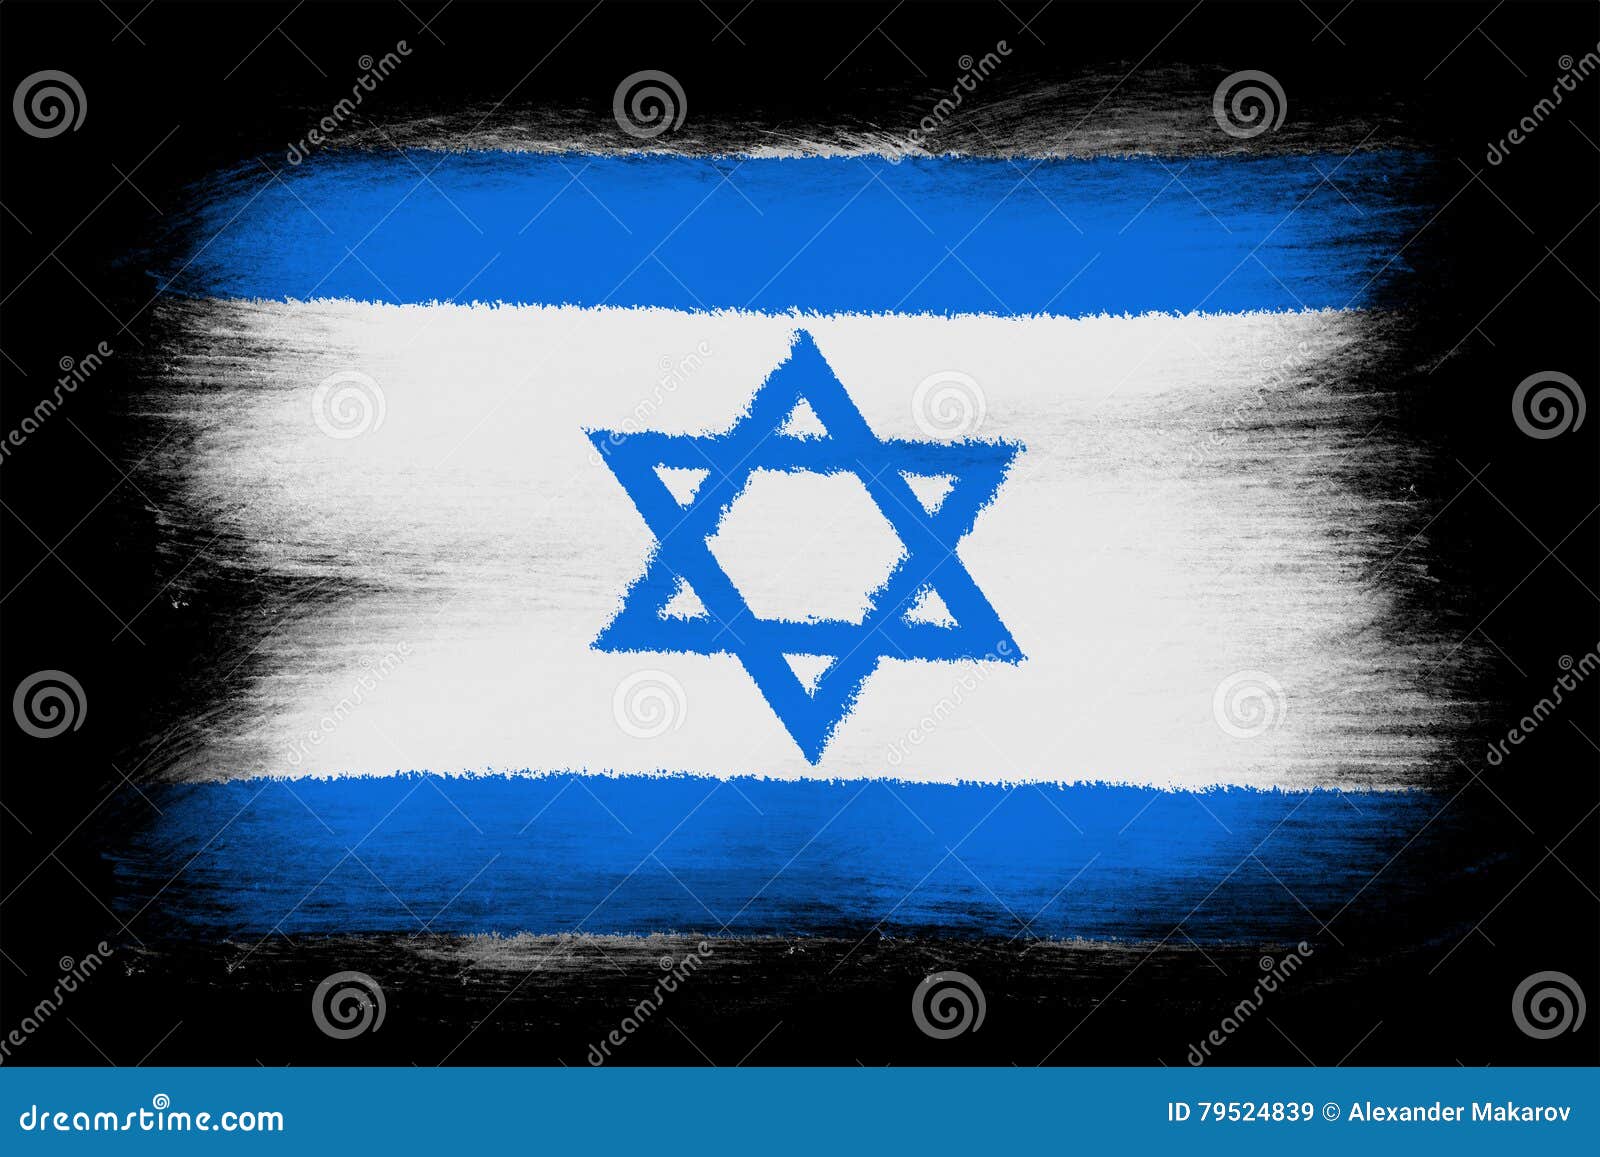 the israeli flag